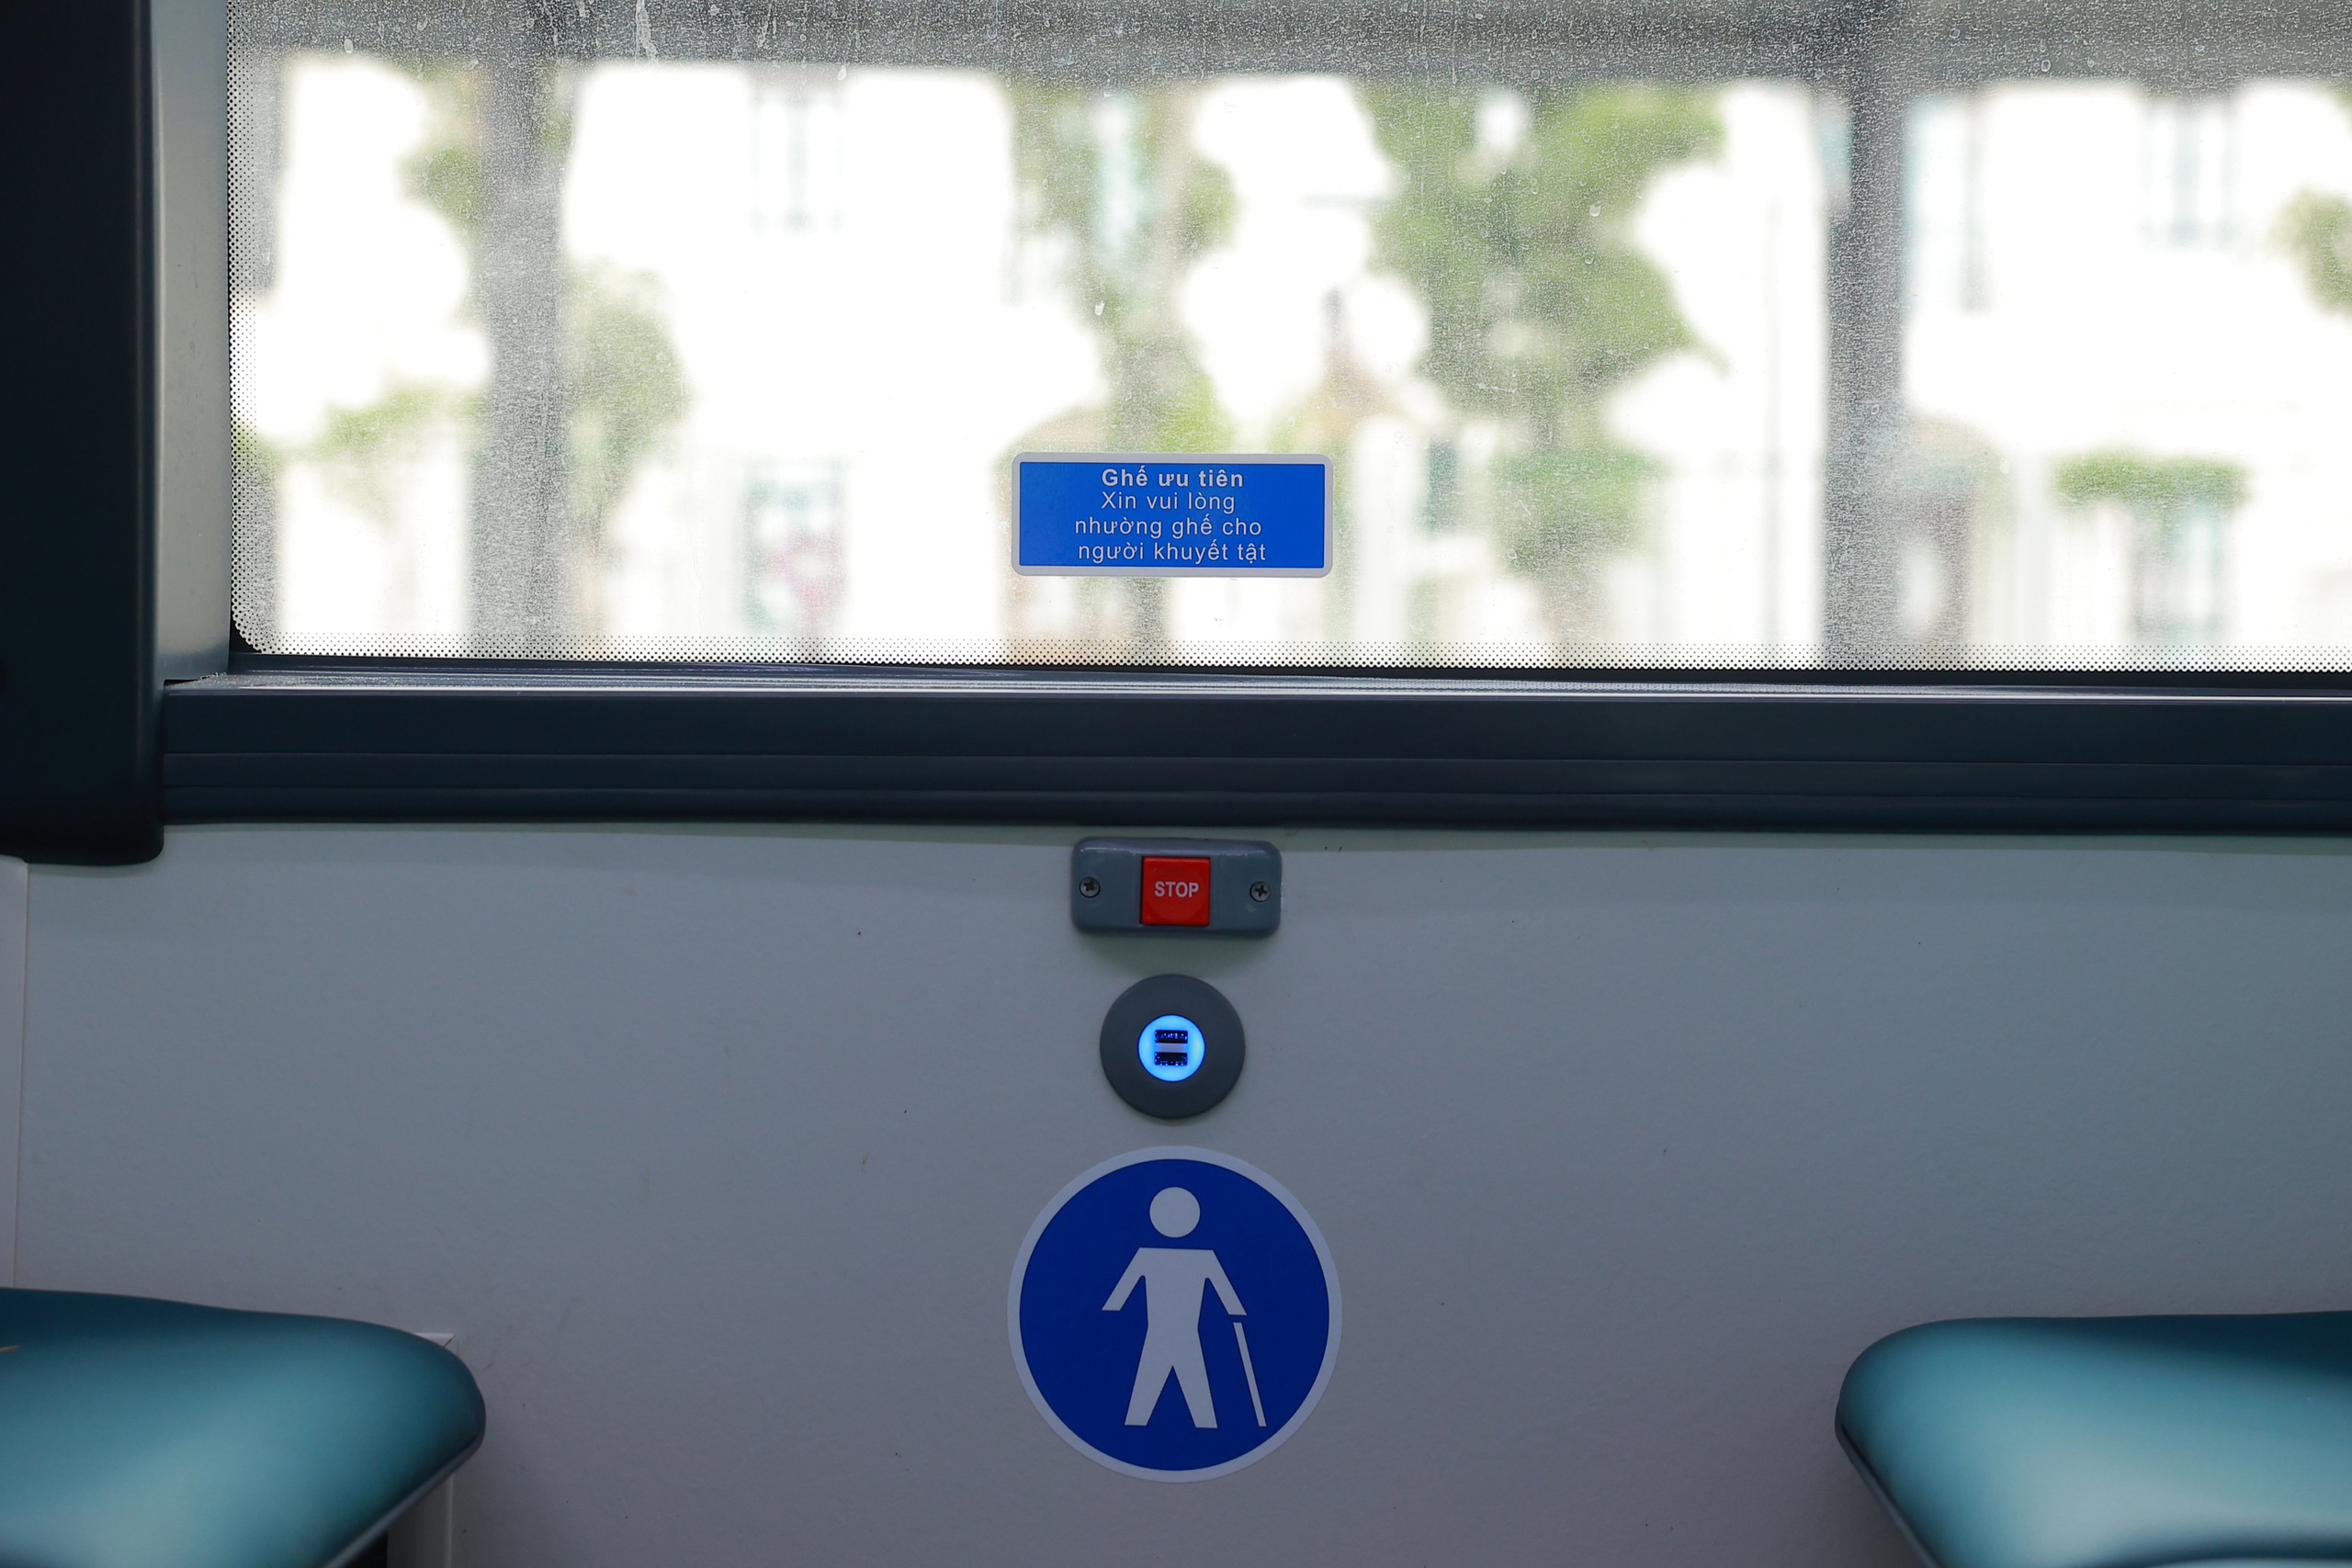 Cận cảnh nội thất chiếc xe buýt điện thông minh đầu tiên tại Việt Nam - Ảnh 10.